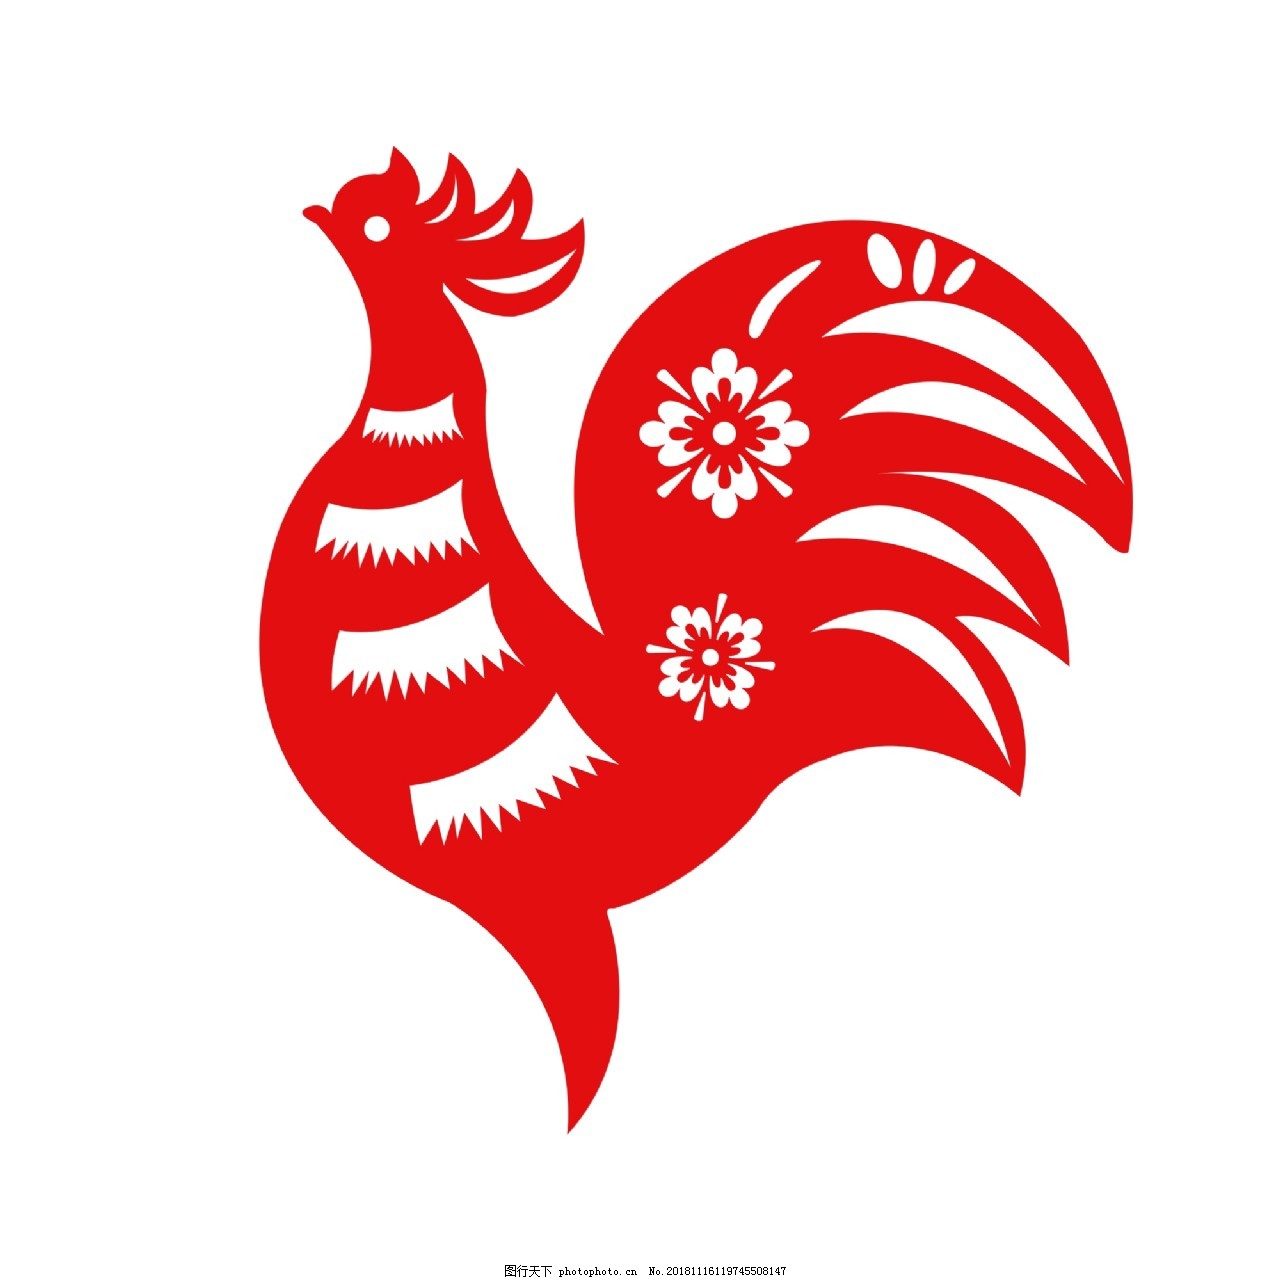 公鸡农历新年设计图形 — 图库矢量图像© Valenty #131146542